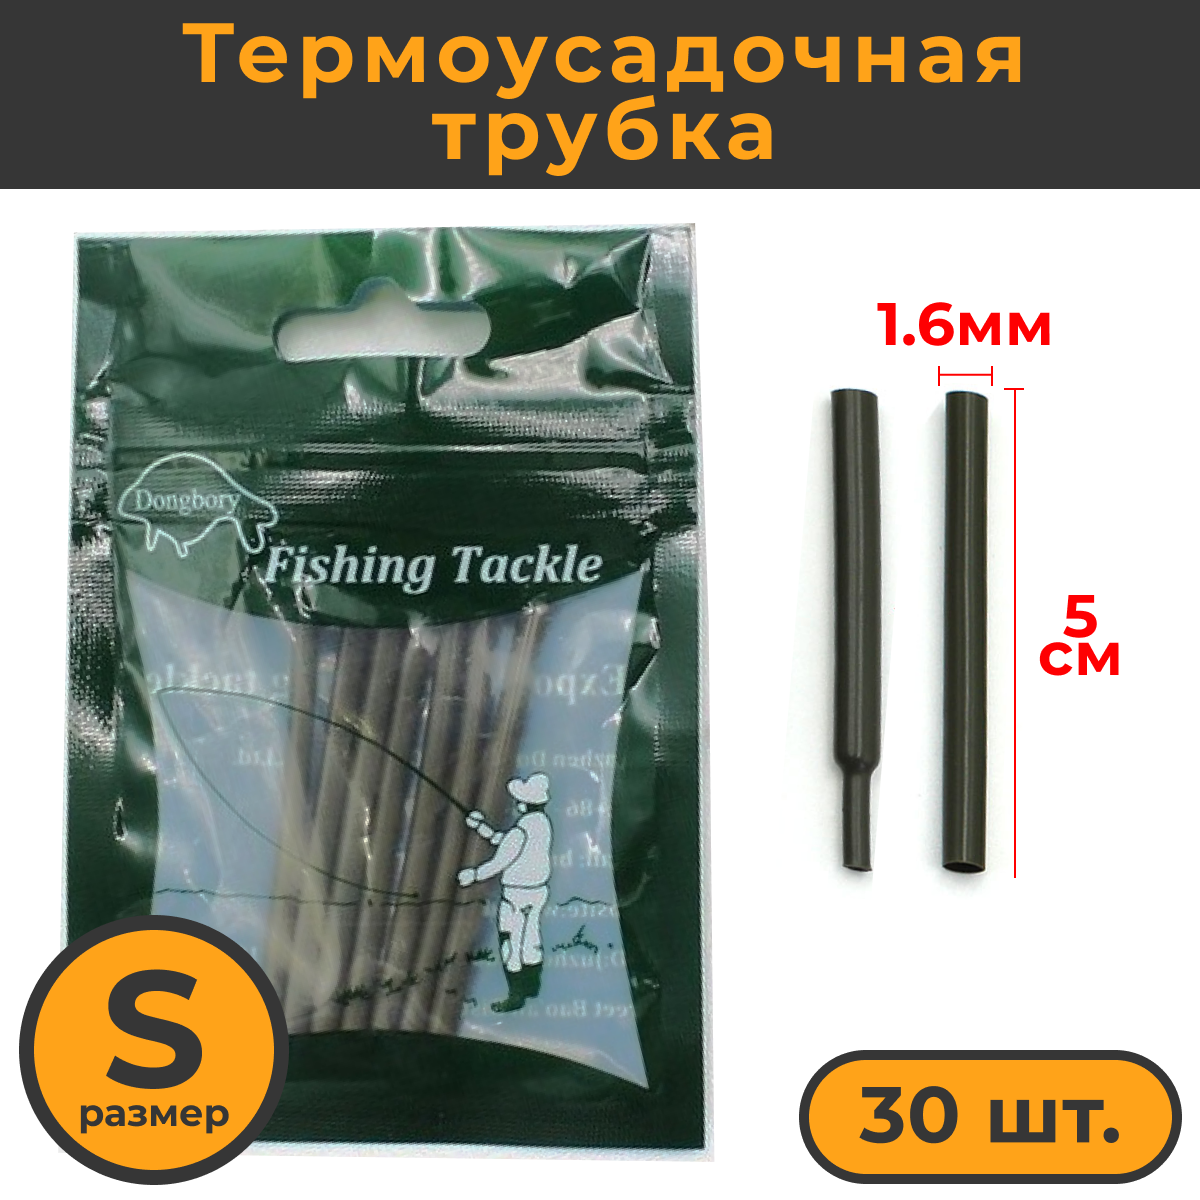 Термоусадка для карповых поводков 30шт размер S (16мм) / Термоусадочная трубка рыболовная / термоусадочные трубки для рыбалки / Кембрики рыболовные